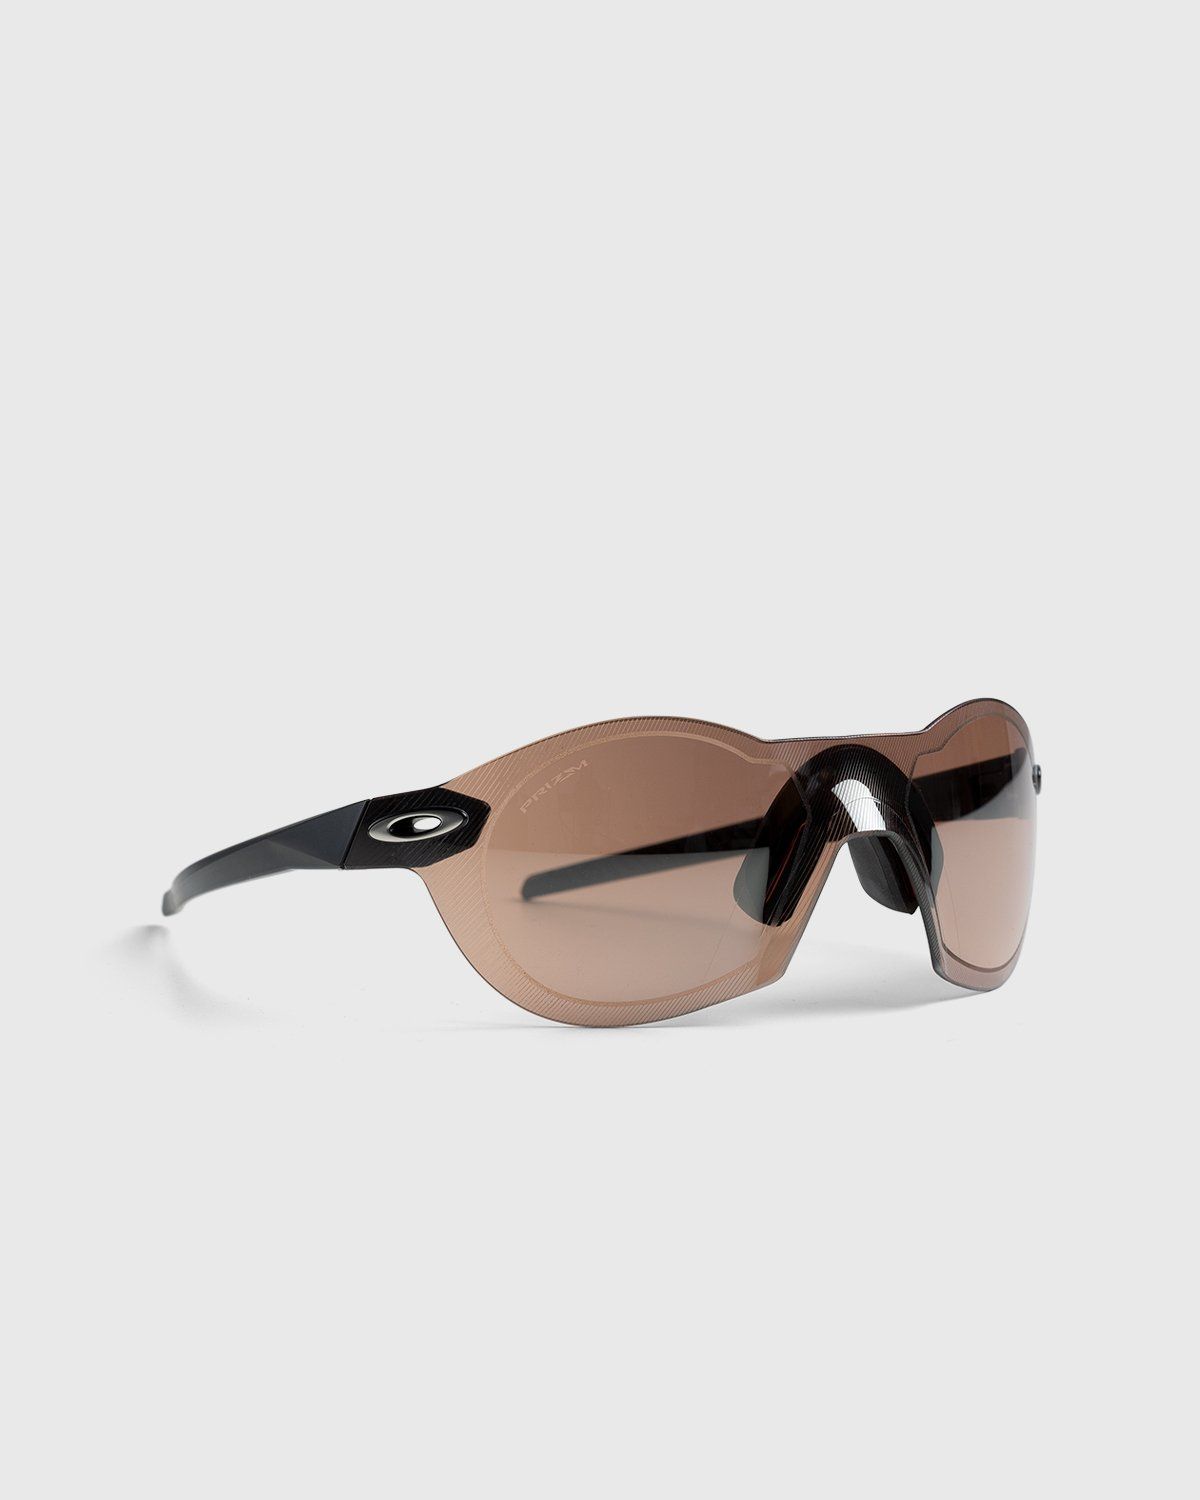 Oakley – Re:SubZero MT Black Prizm Dark Golf - Eyewear - Brown - Image 2